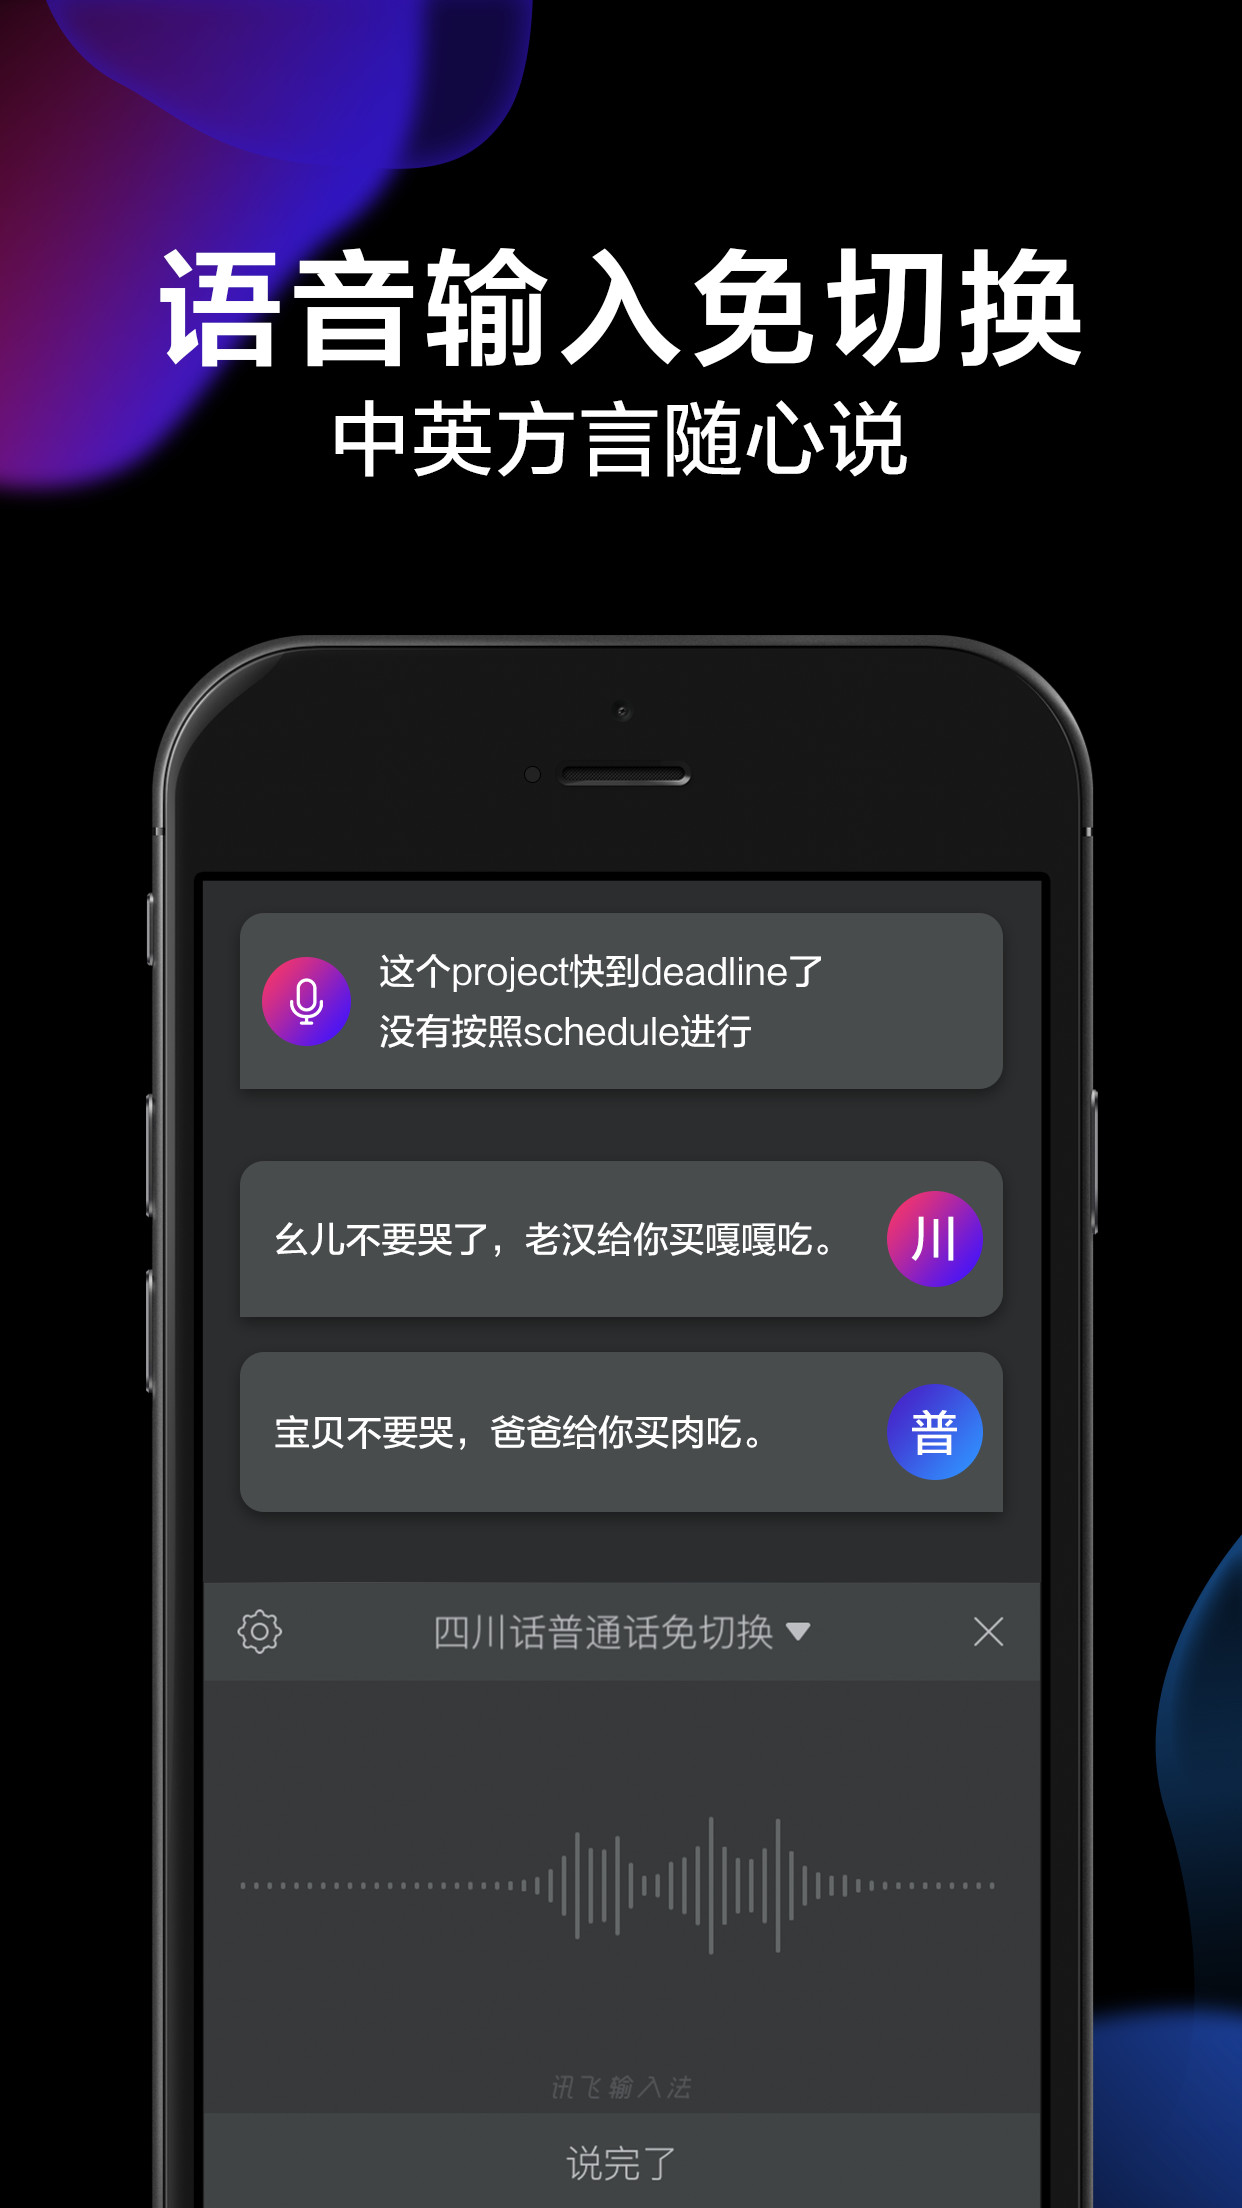 讯飞语音输入法iPhone版 V9.1.2788